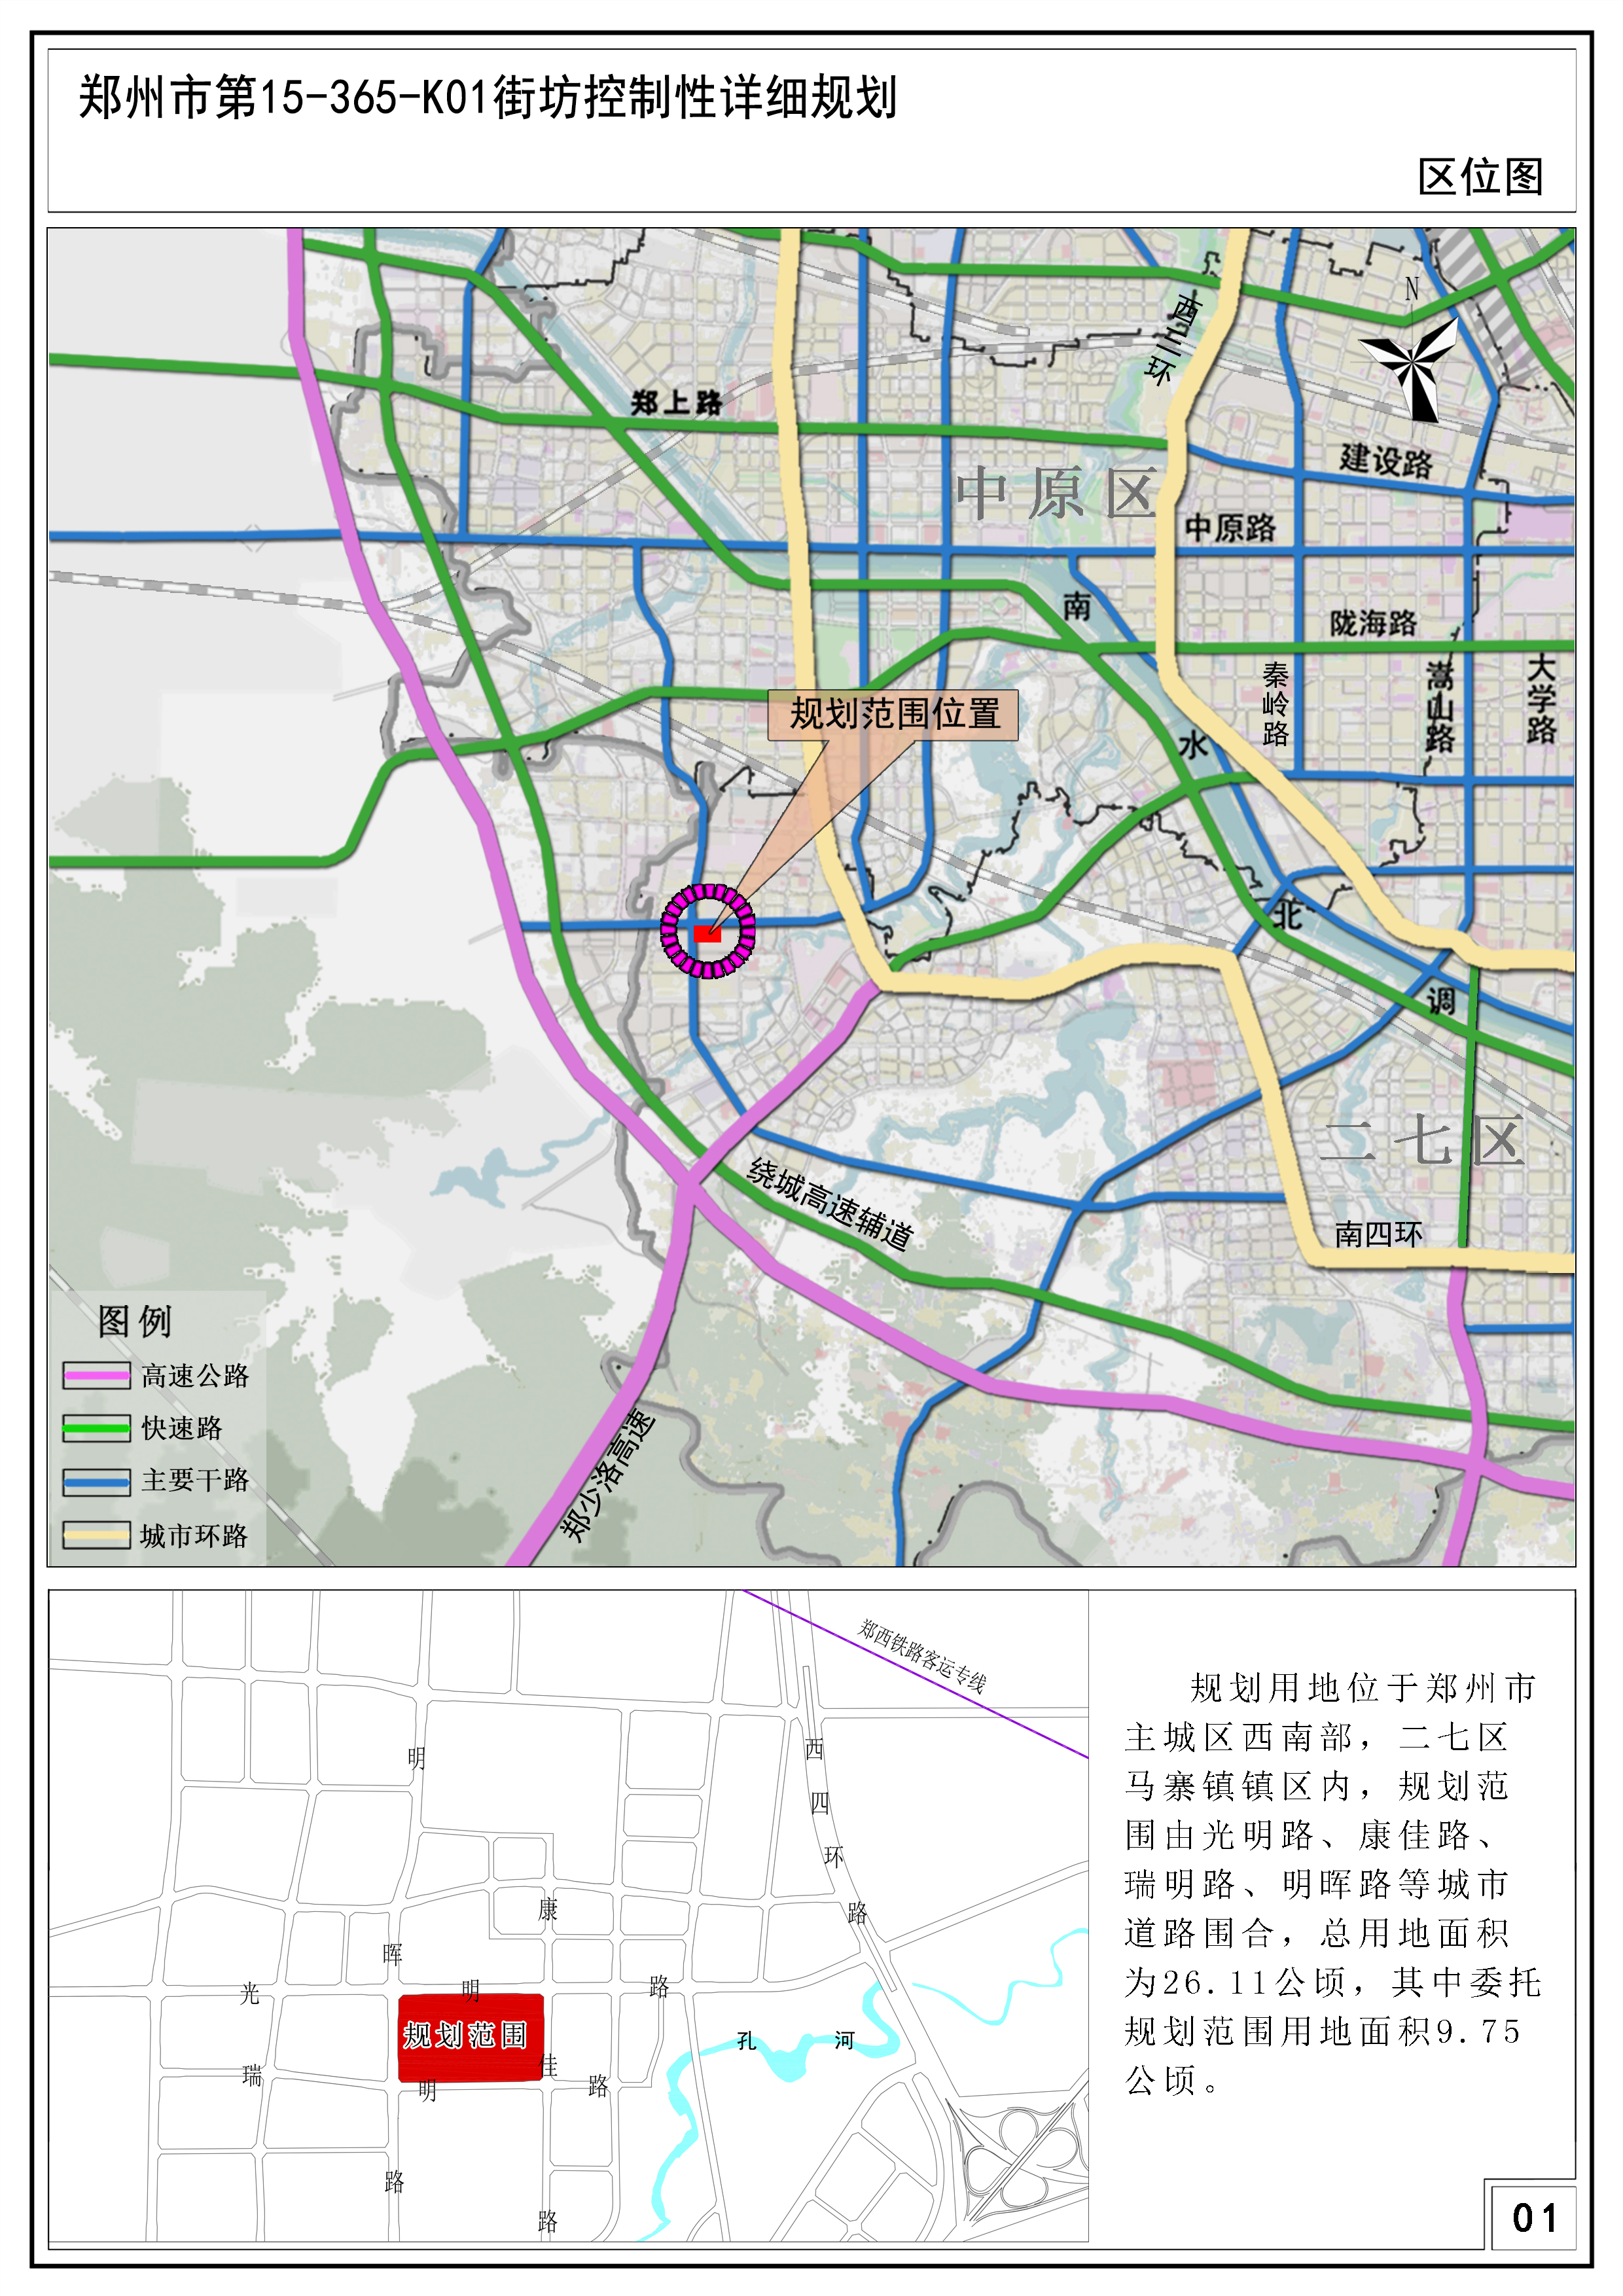 郑州市第15-365-K01街坊控制性详细规划